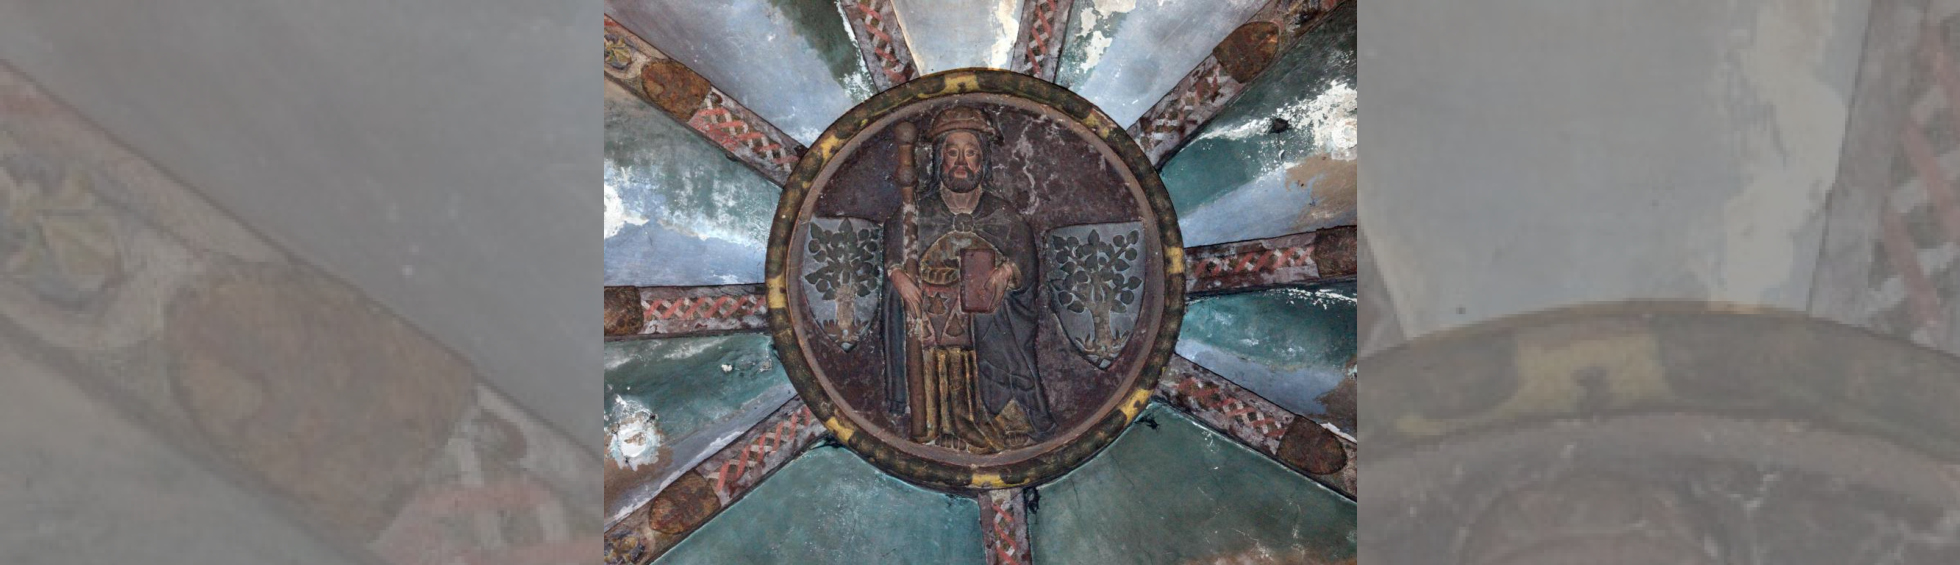 Médaillon circulaire montrant  saint jacques tenant la bible